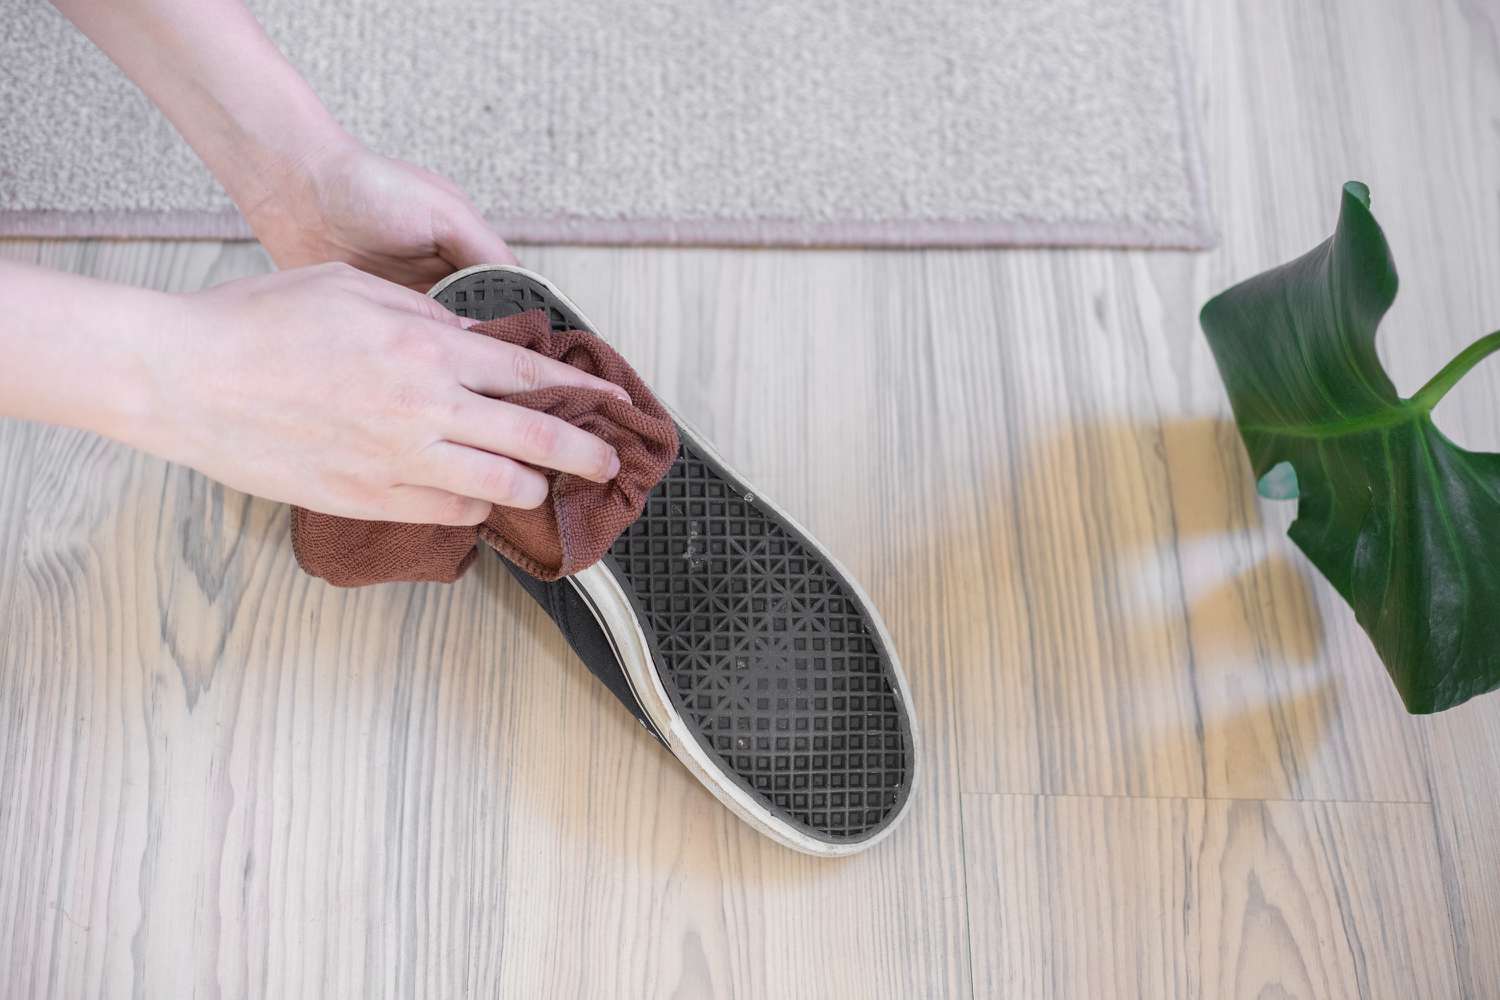 Limpia la suela de los zapatos con un trapo húmedo para quitar los trozos de cristal